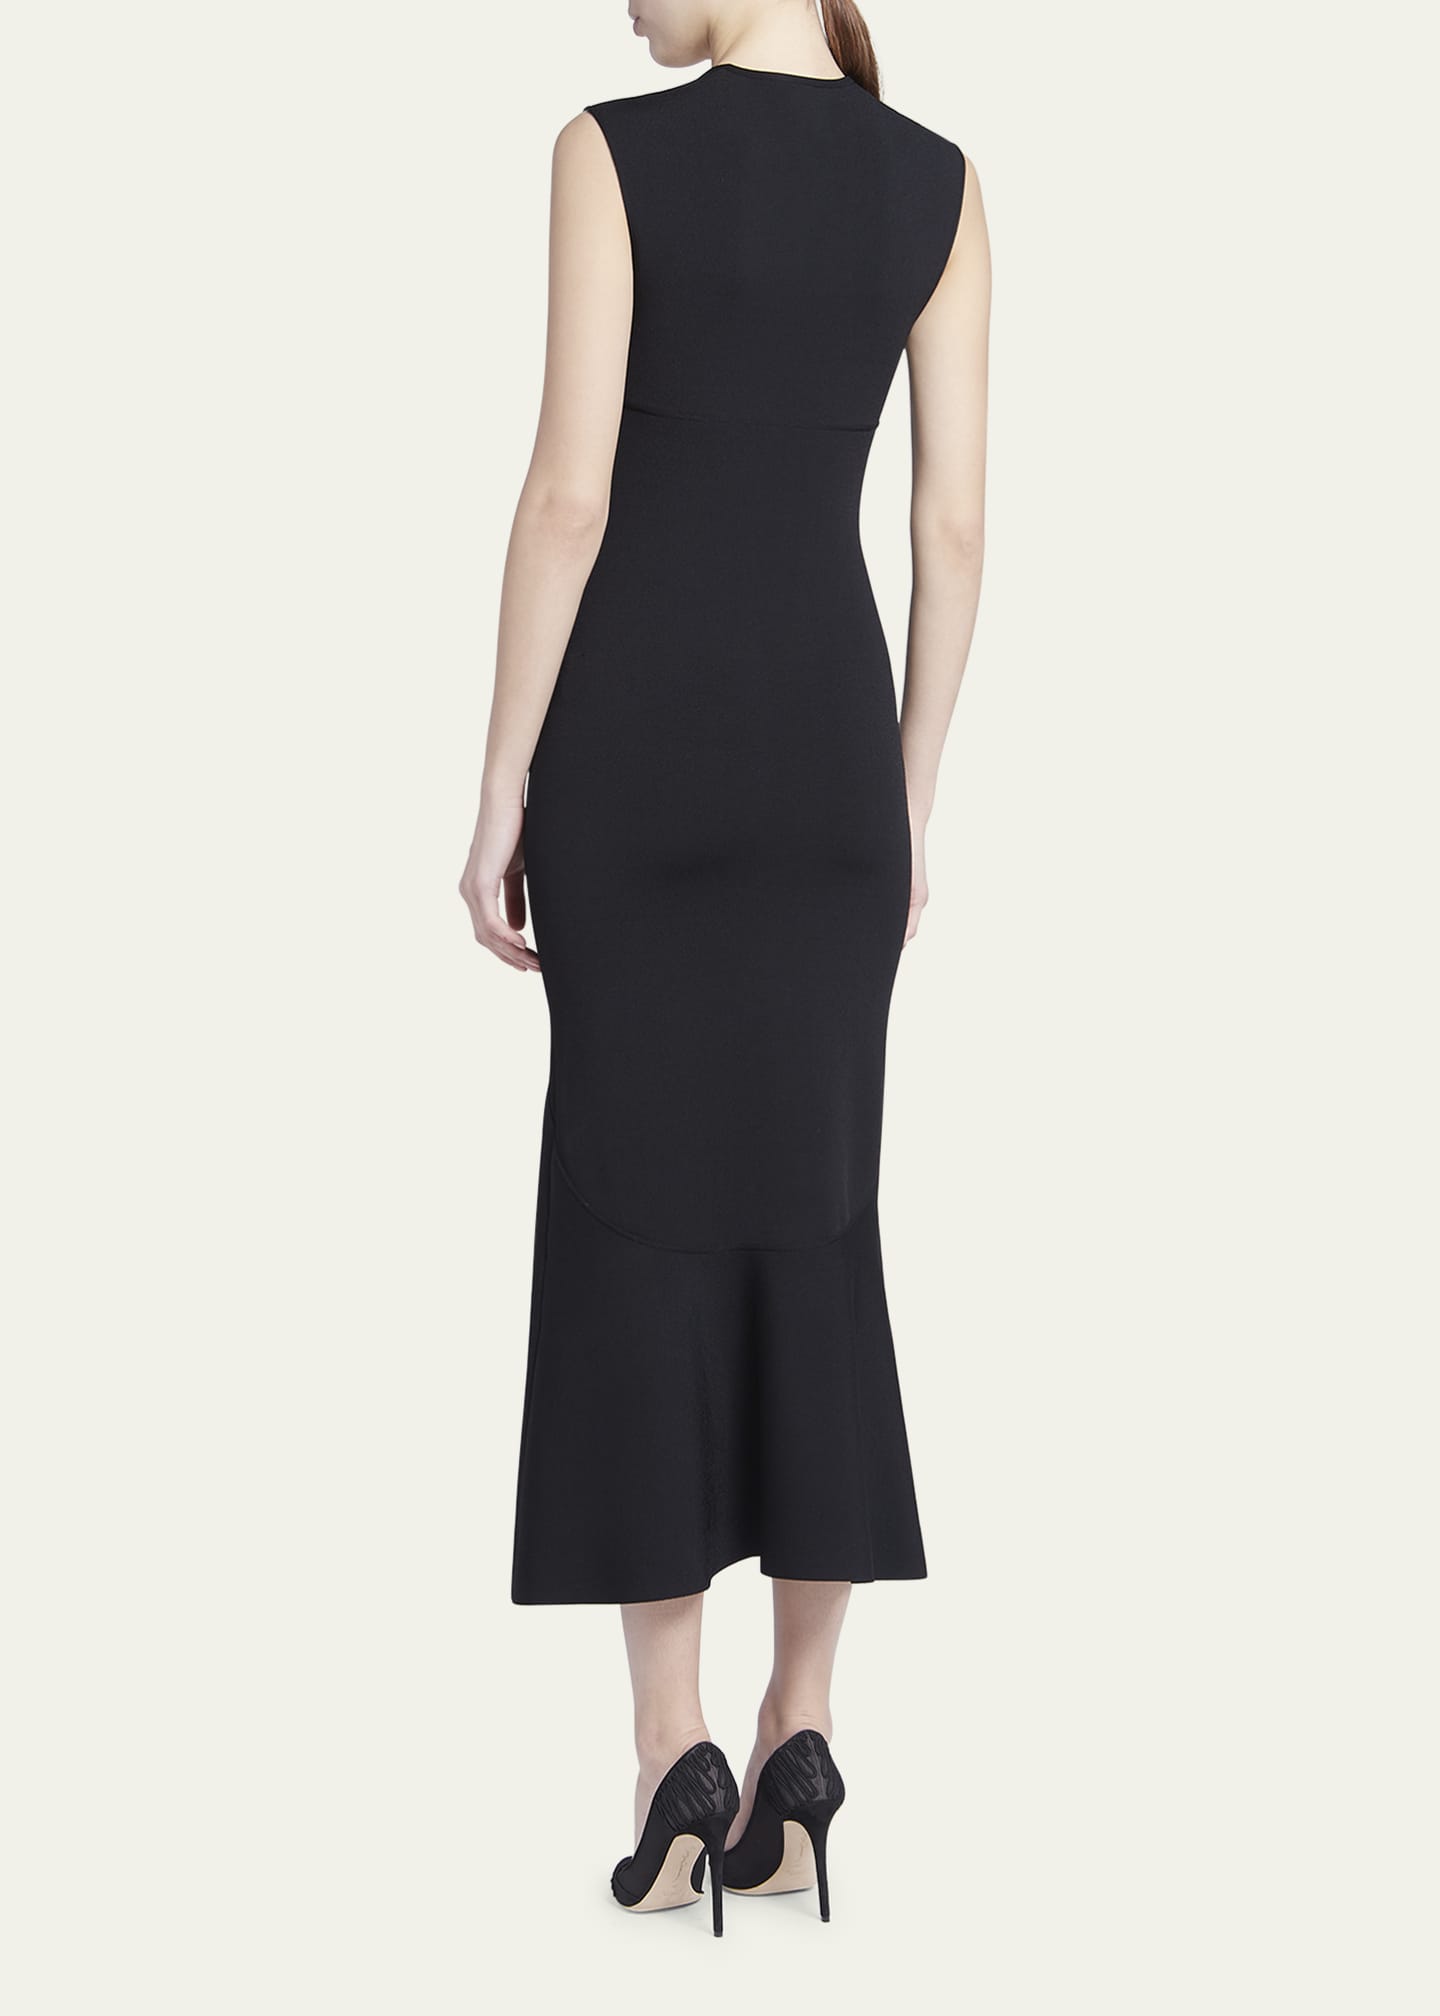 Giorgio Armani, Dresses, Giorgio Armani Black Sleeveless Dress Size 6